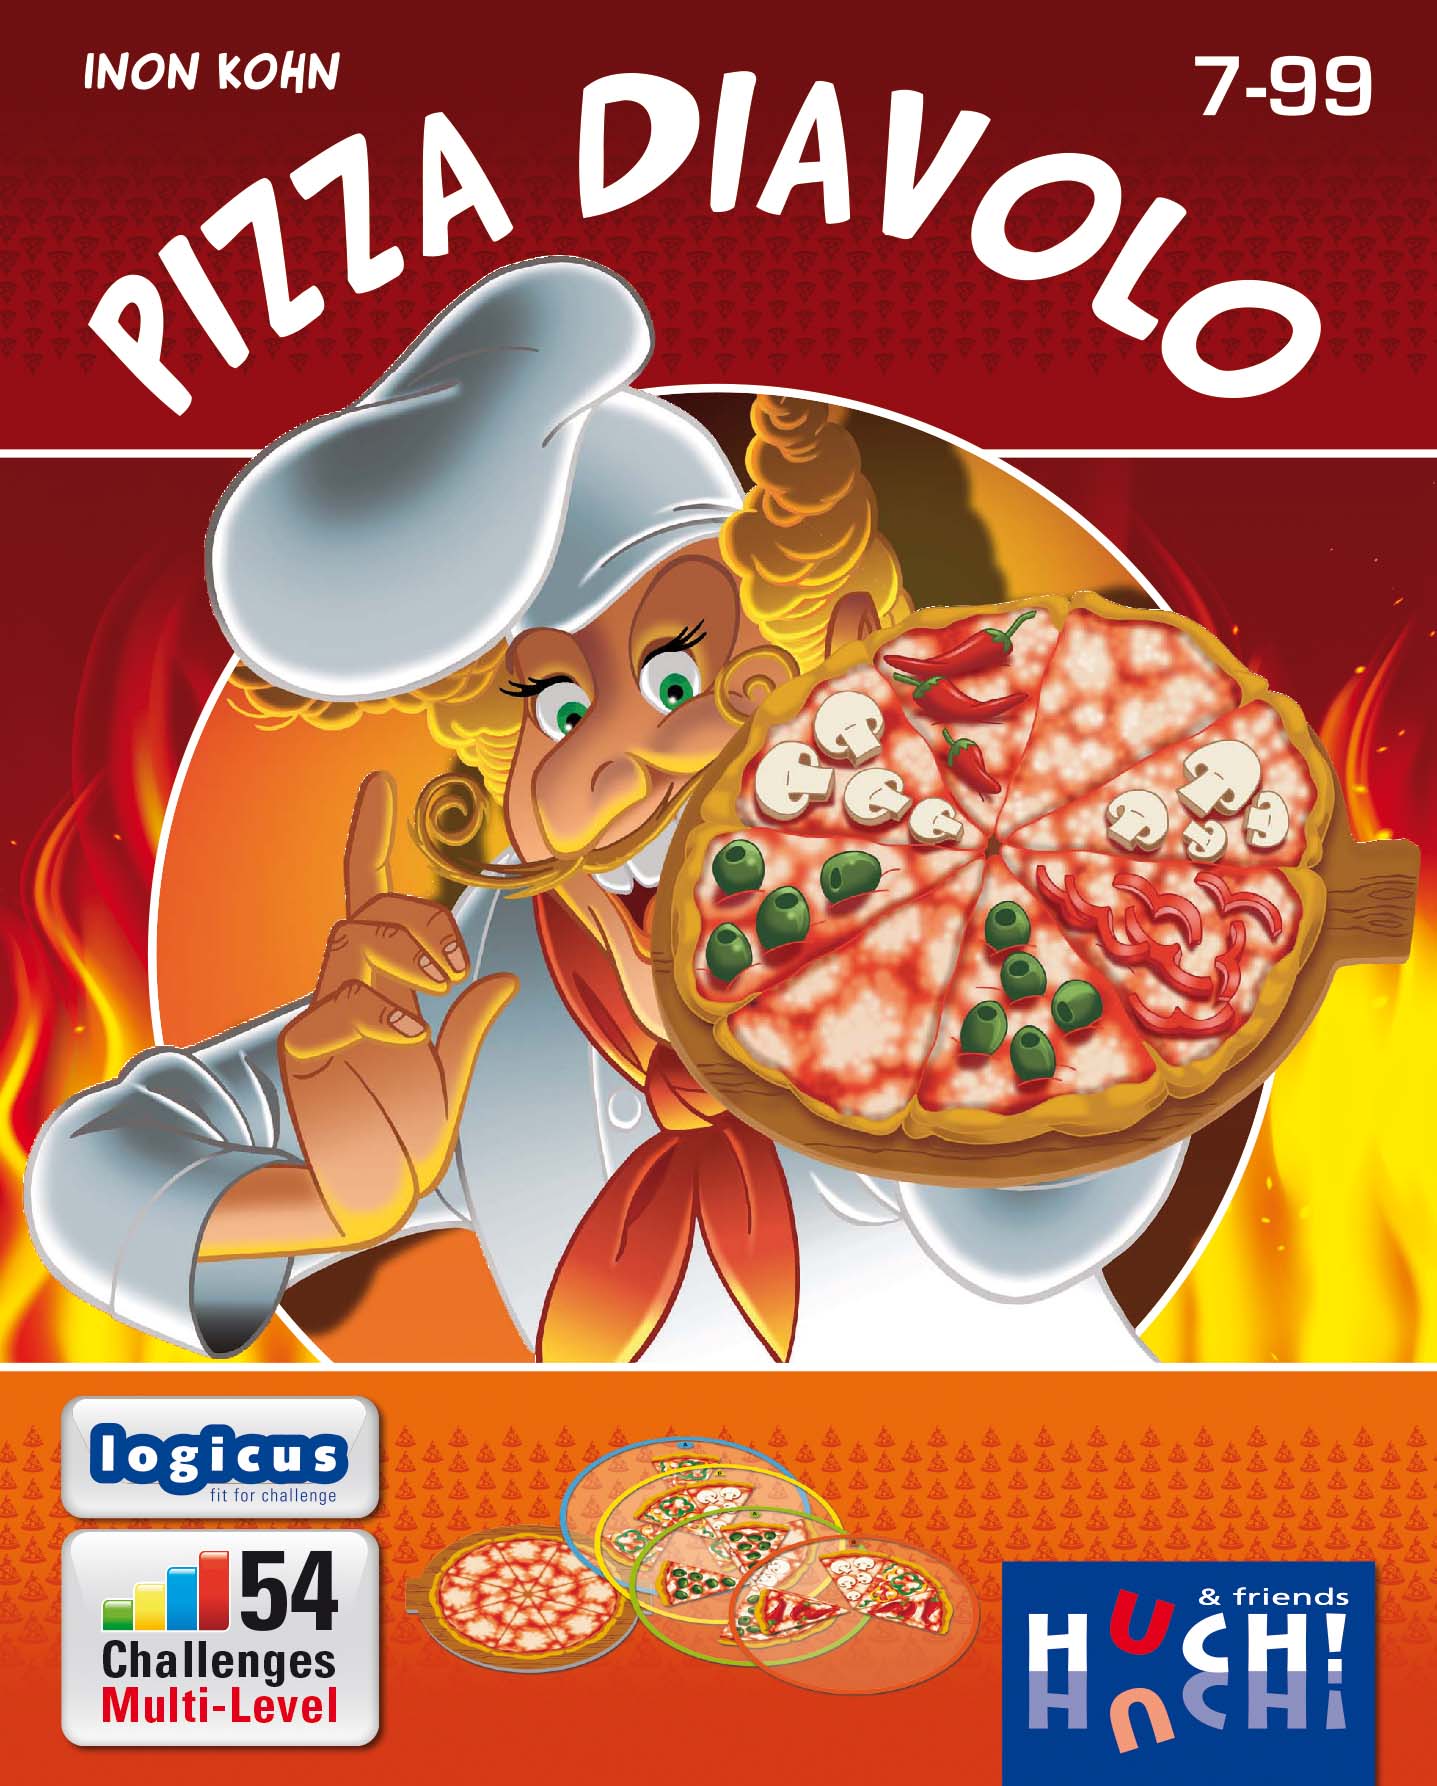 Das Familienspiel Pizza Diavolo erscheint am 25.2.2017